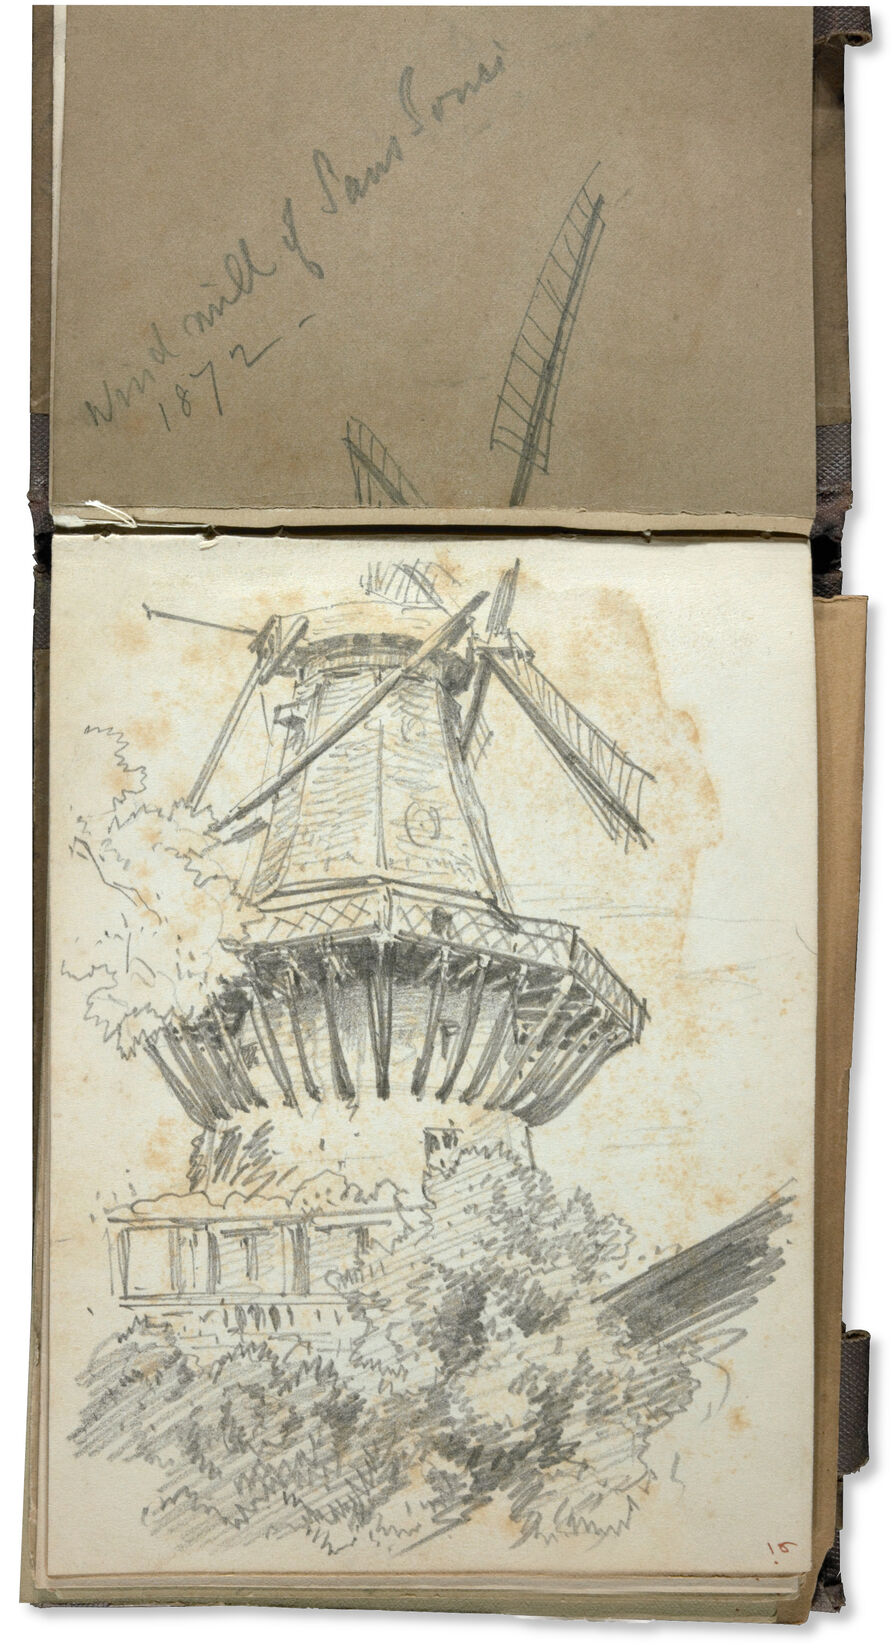 John Singer Sargent, Die Windmühle von Sanssouci, 1872, Graphit auf Papier, 15,6 x 11,3 cm.